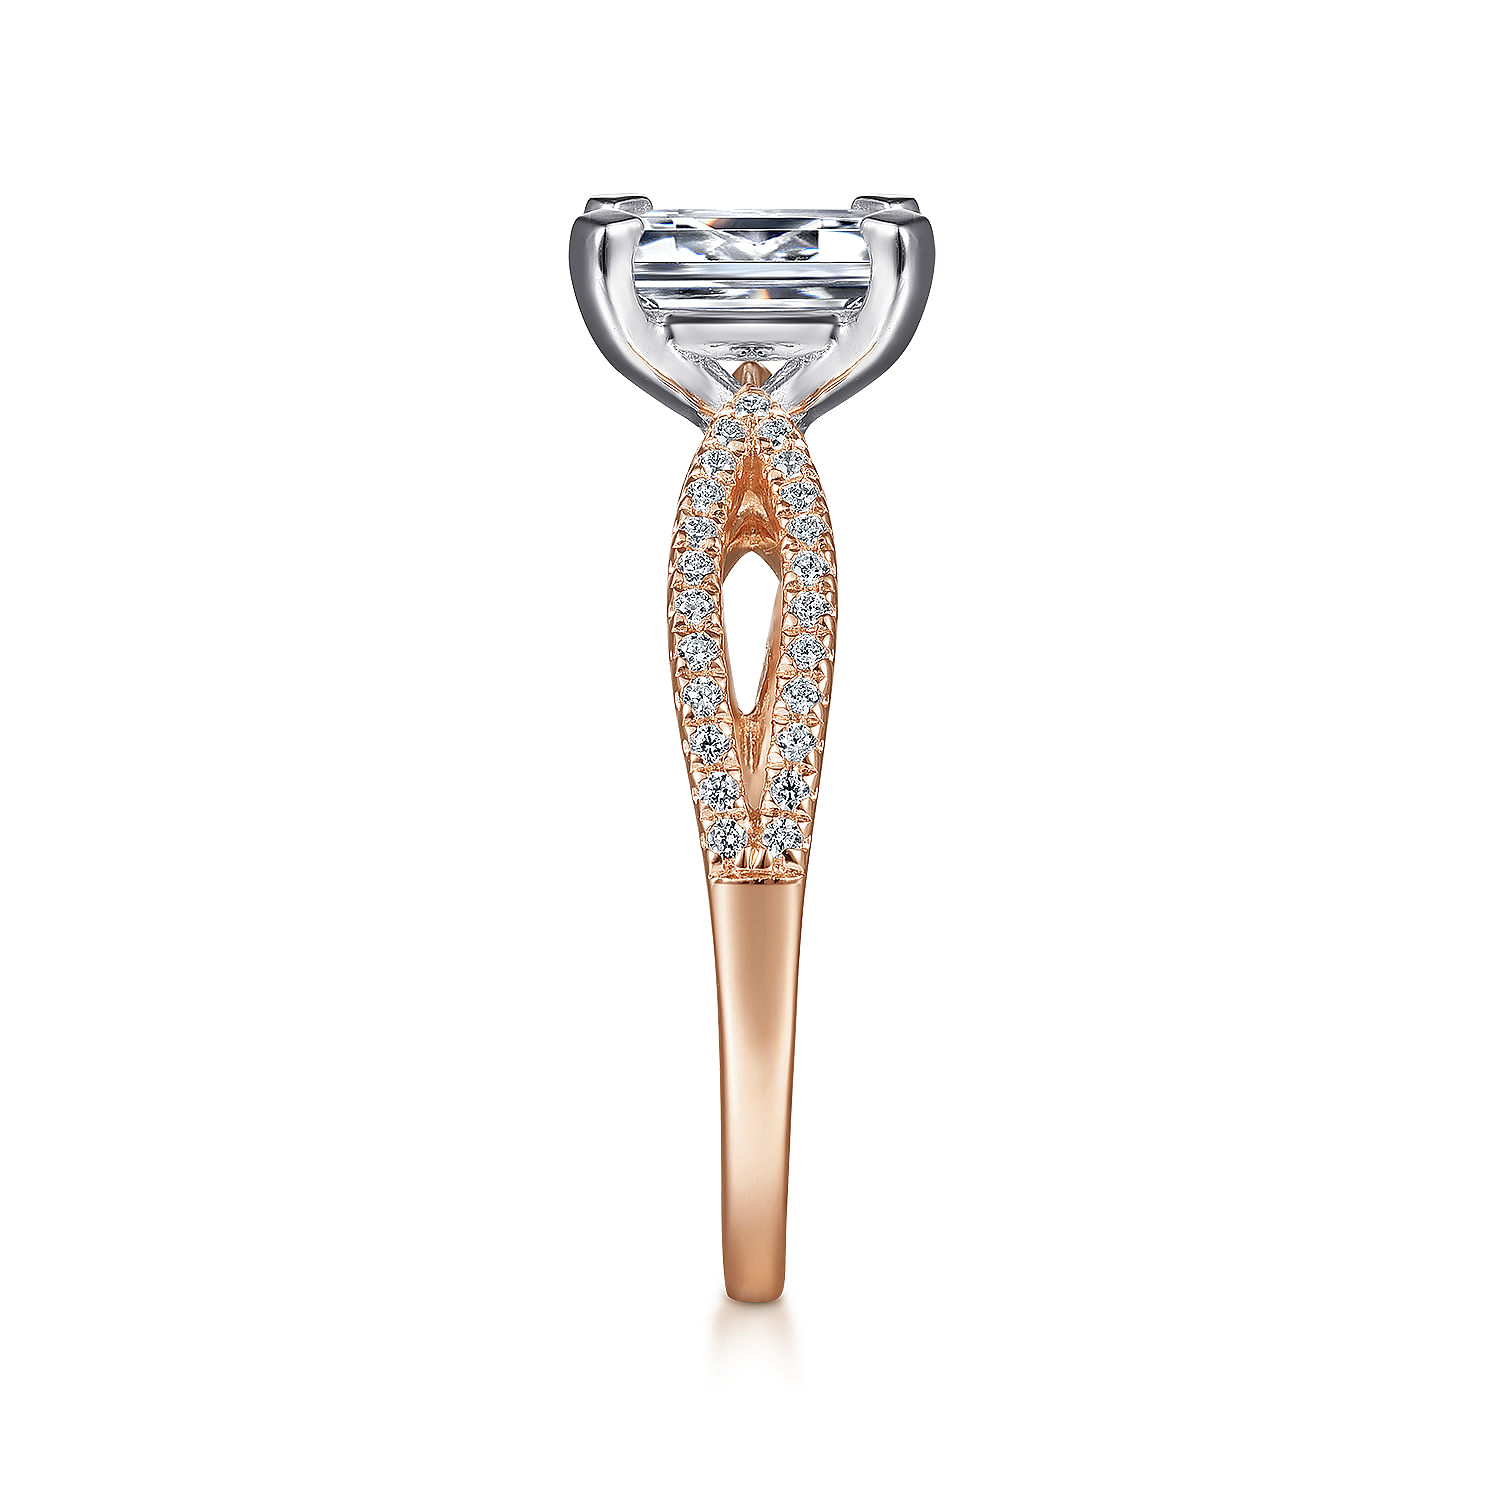 14K White-Rose Gold Split Shank Emerald Cut Diamond Engagement Ring